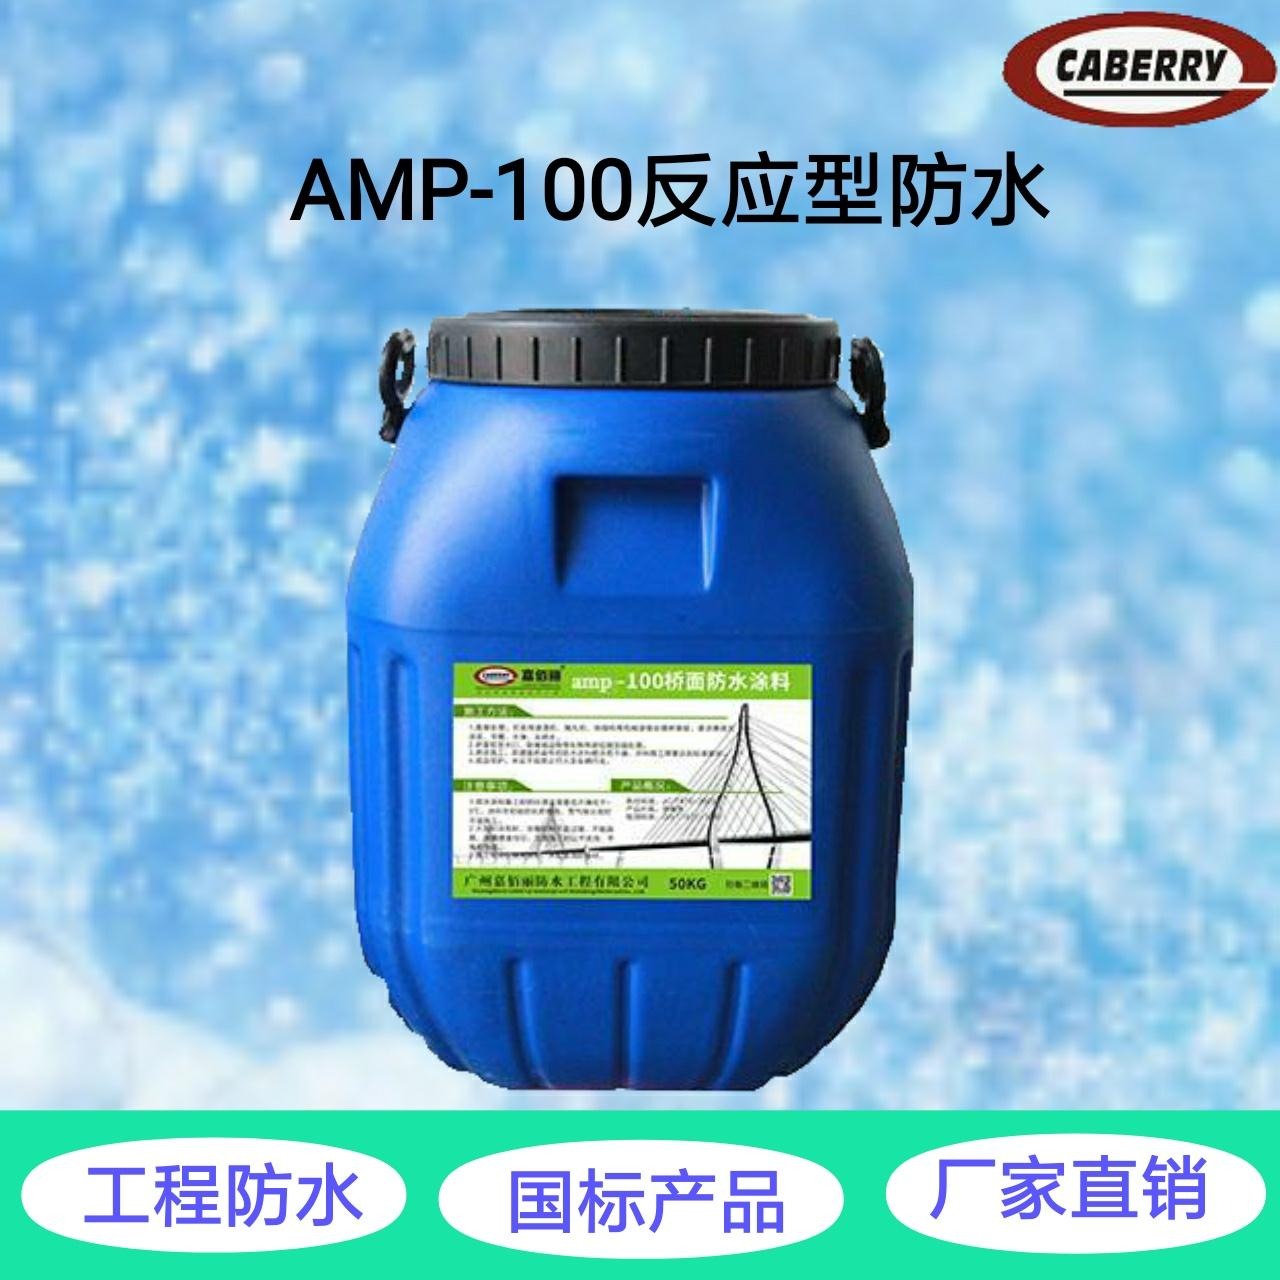 高速基面粘结防水层 反应型桥面防水涂料 AMP-100防水材料报价